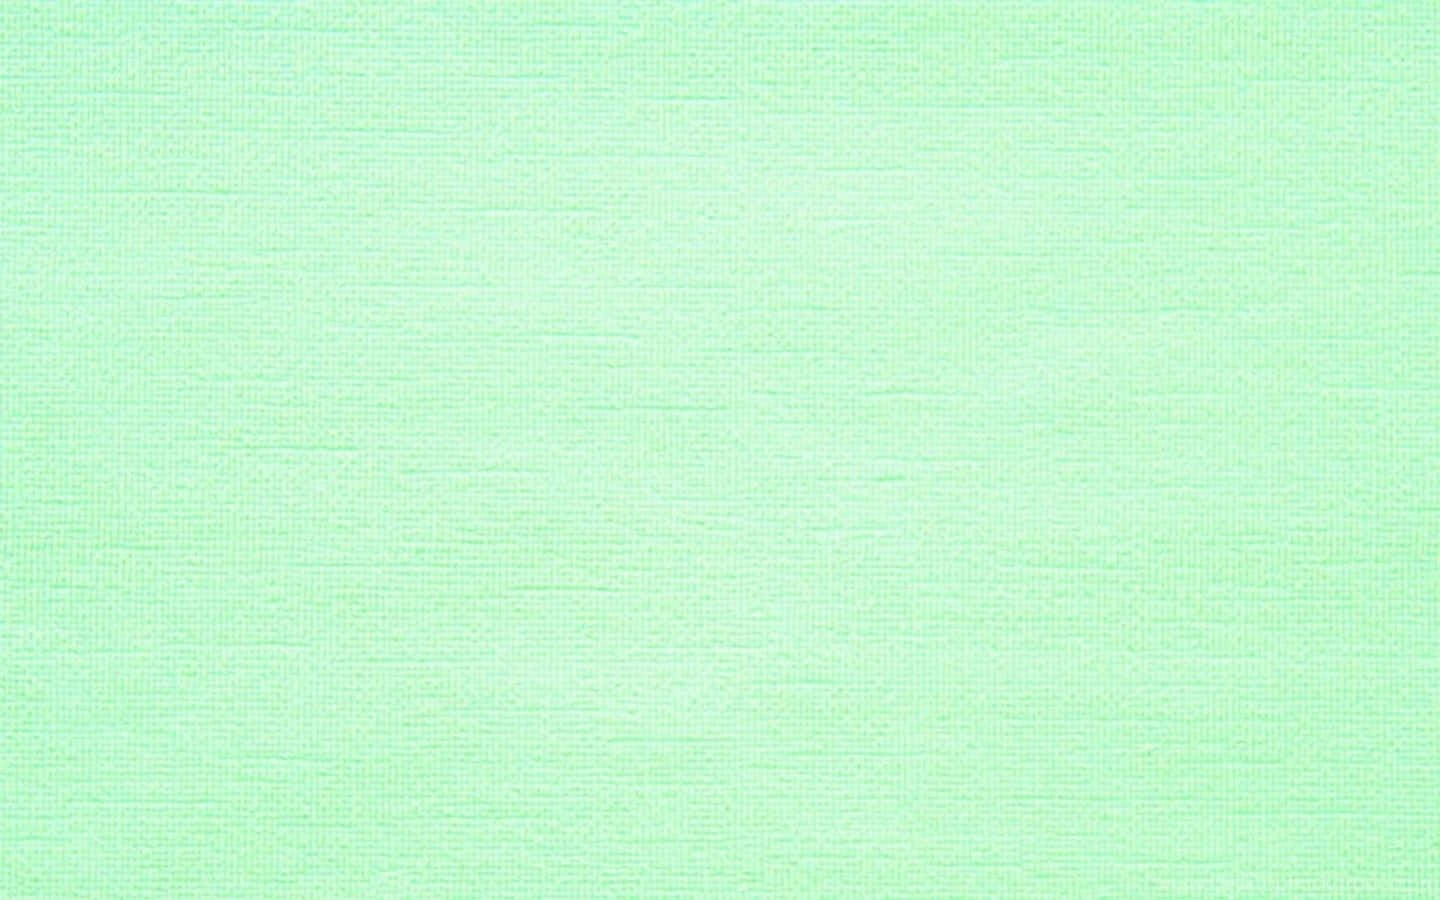 Lad de afklarende, forfriskende vibber af denne pastelfarvede mintgrøn være ved din side. Wallpaper